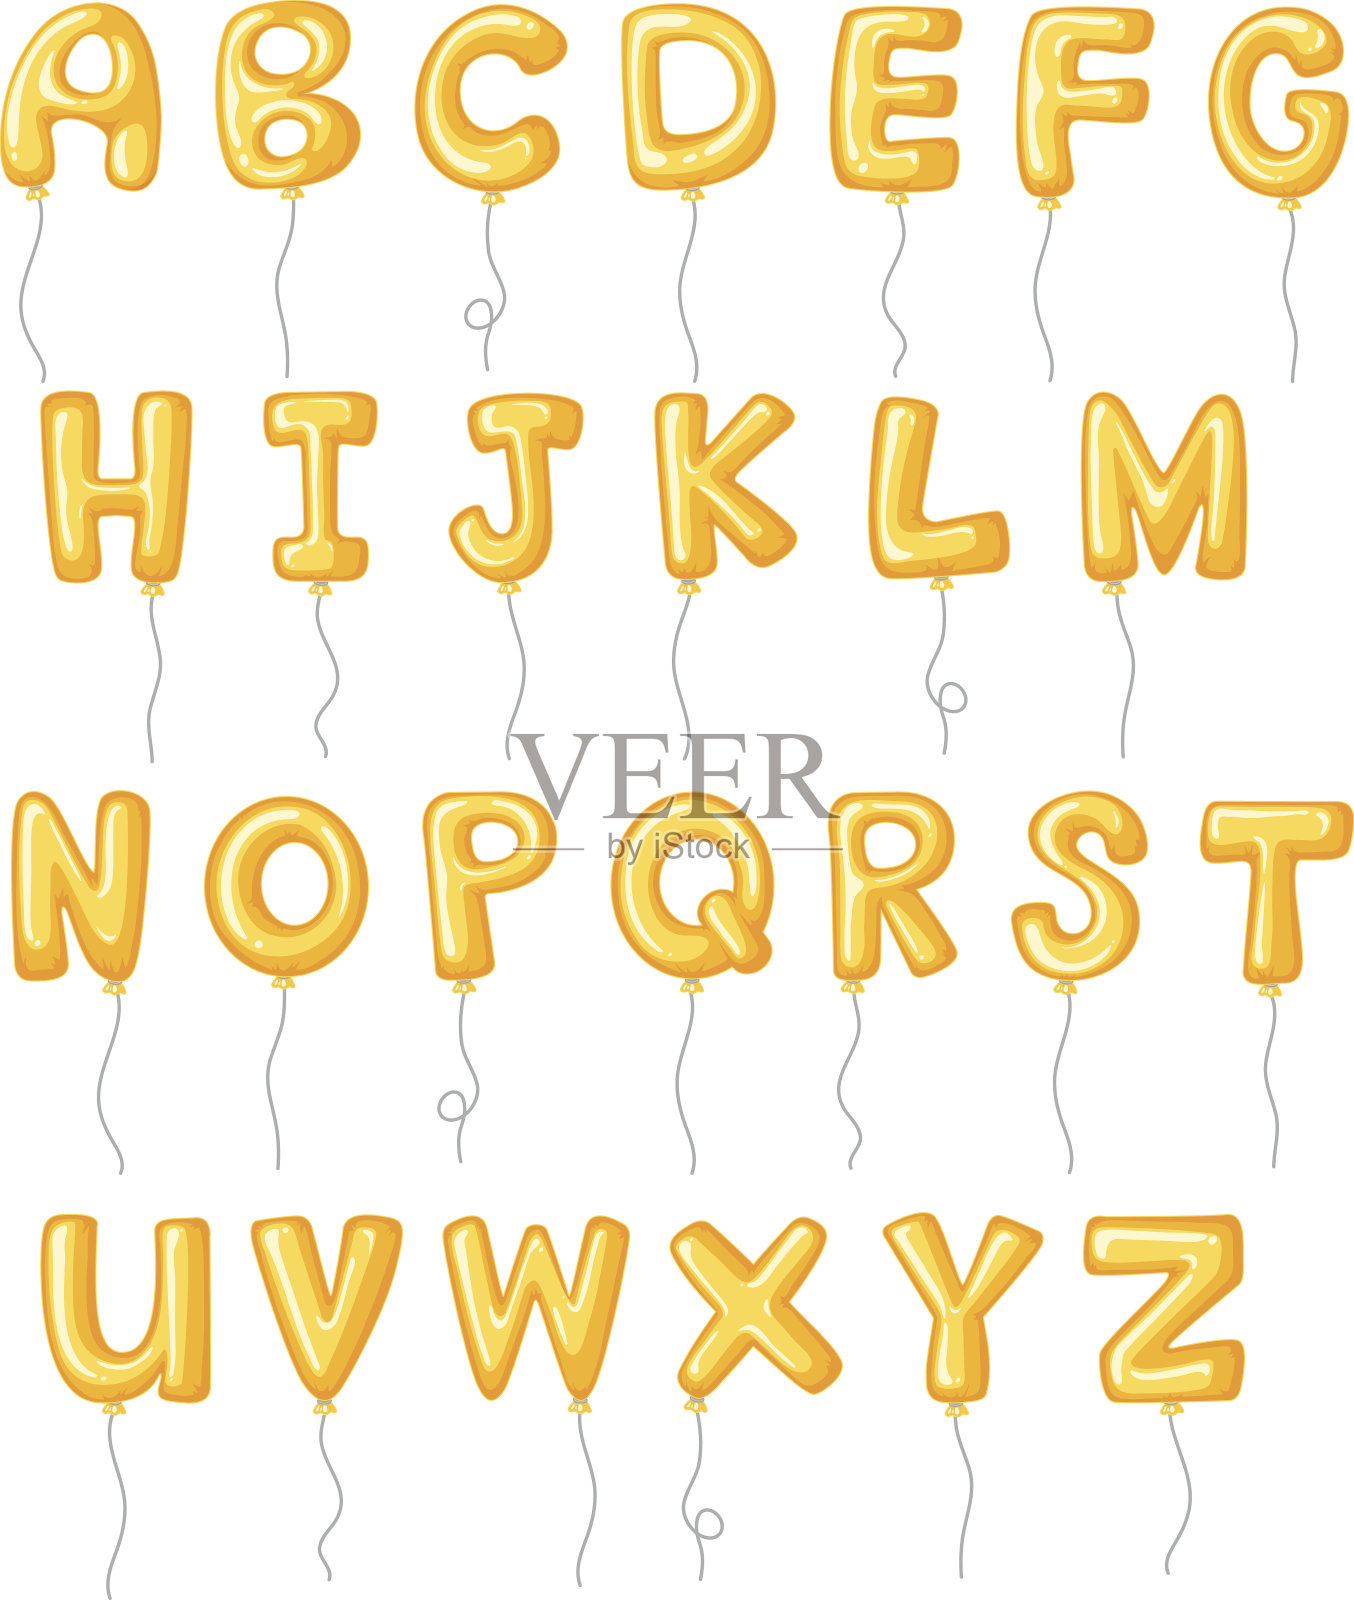 带有黄色气球的字母设计插画图片素材